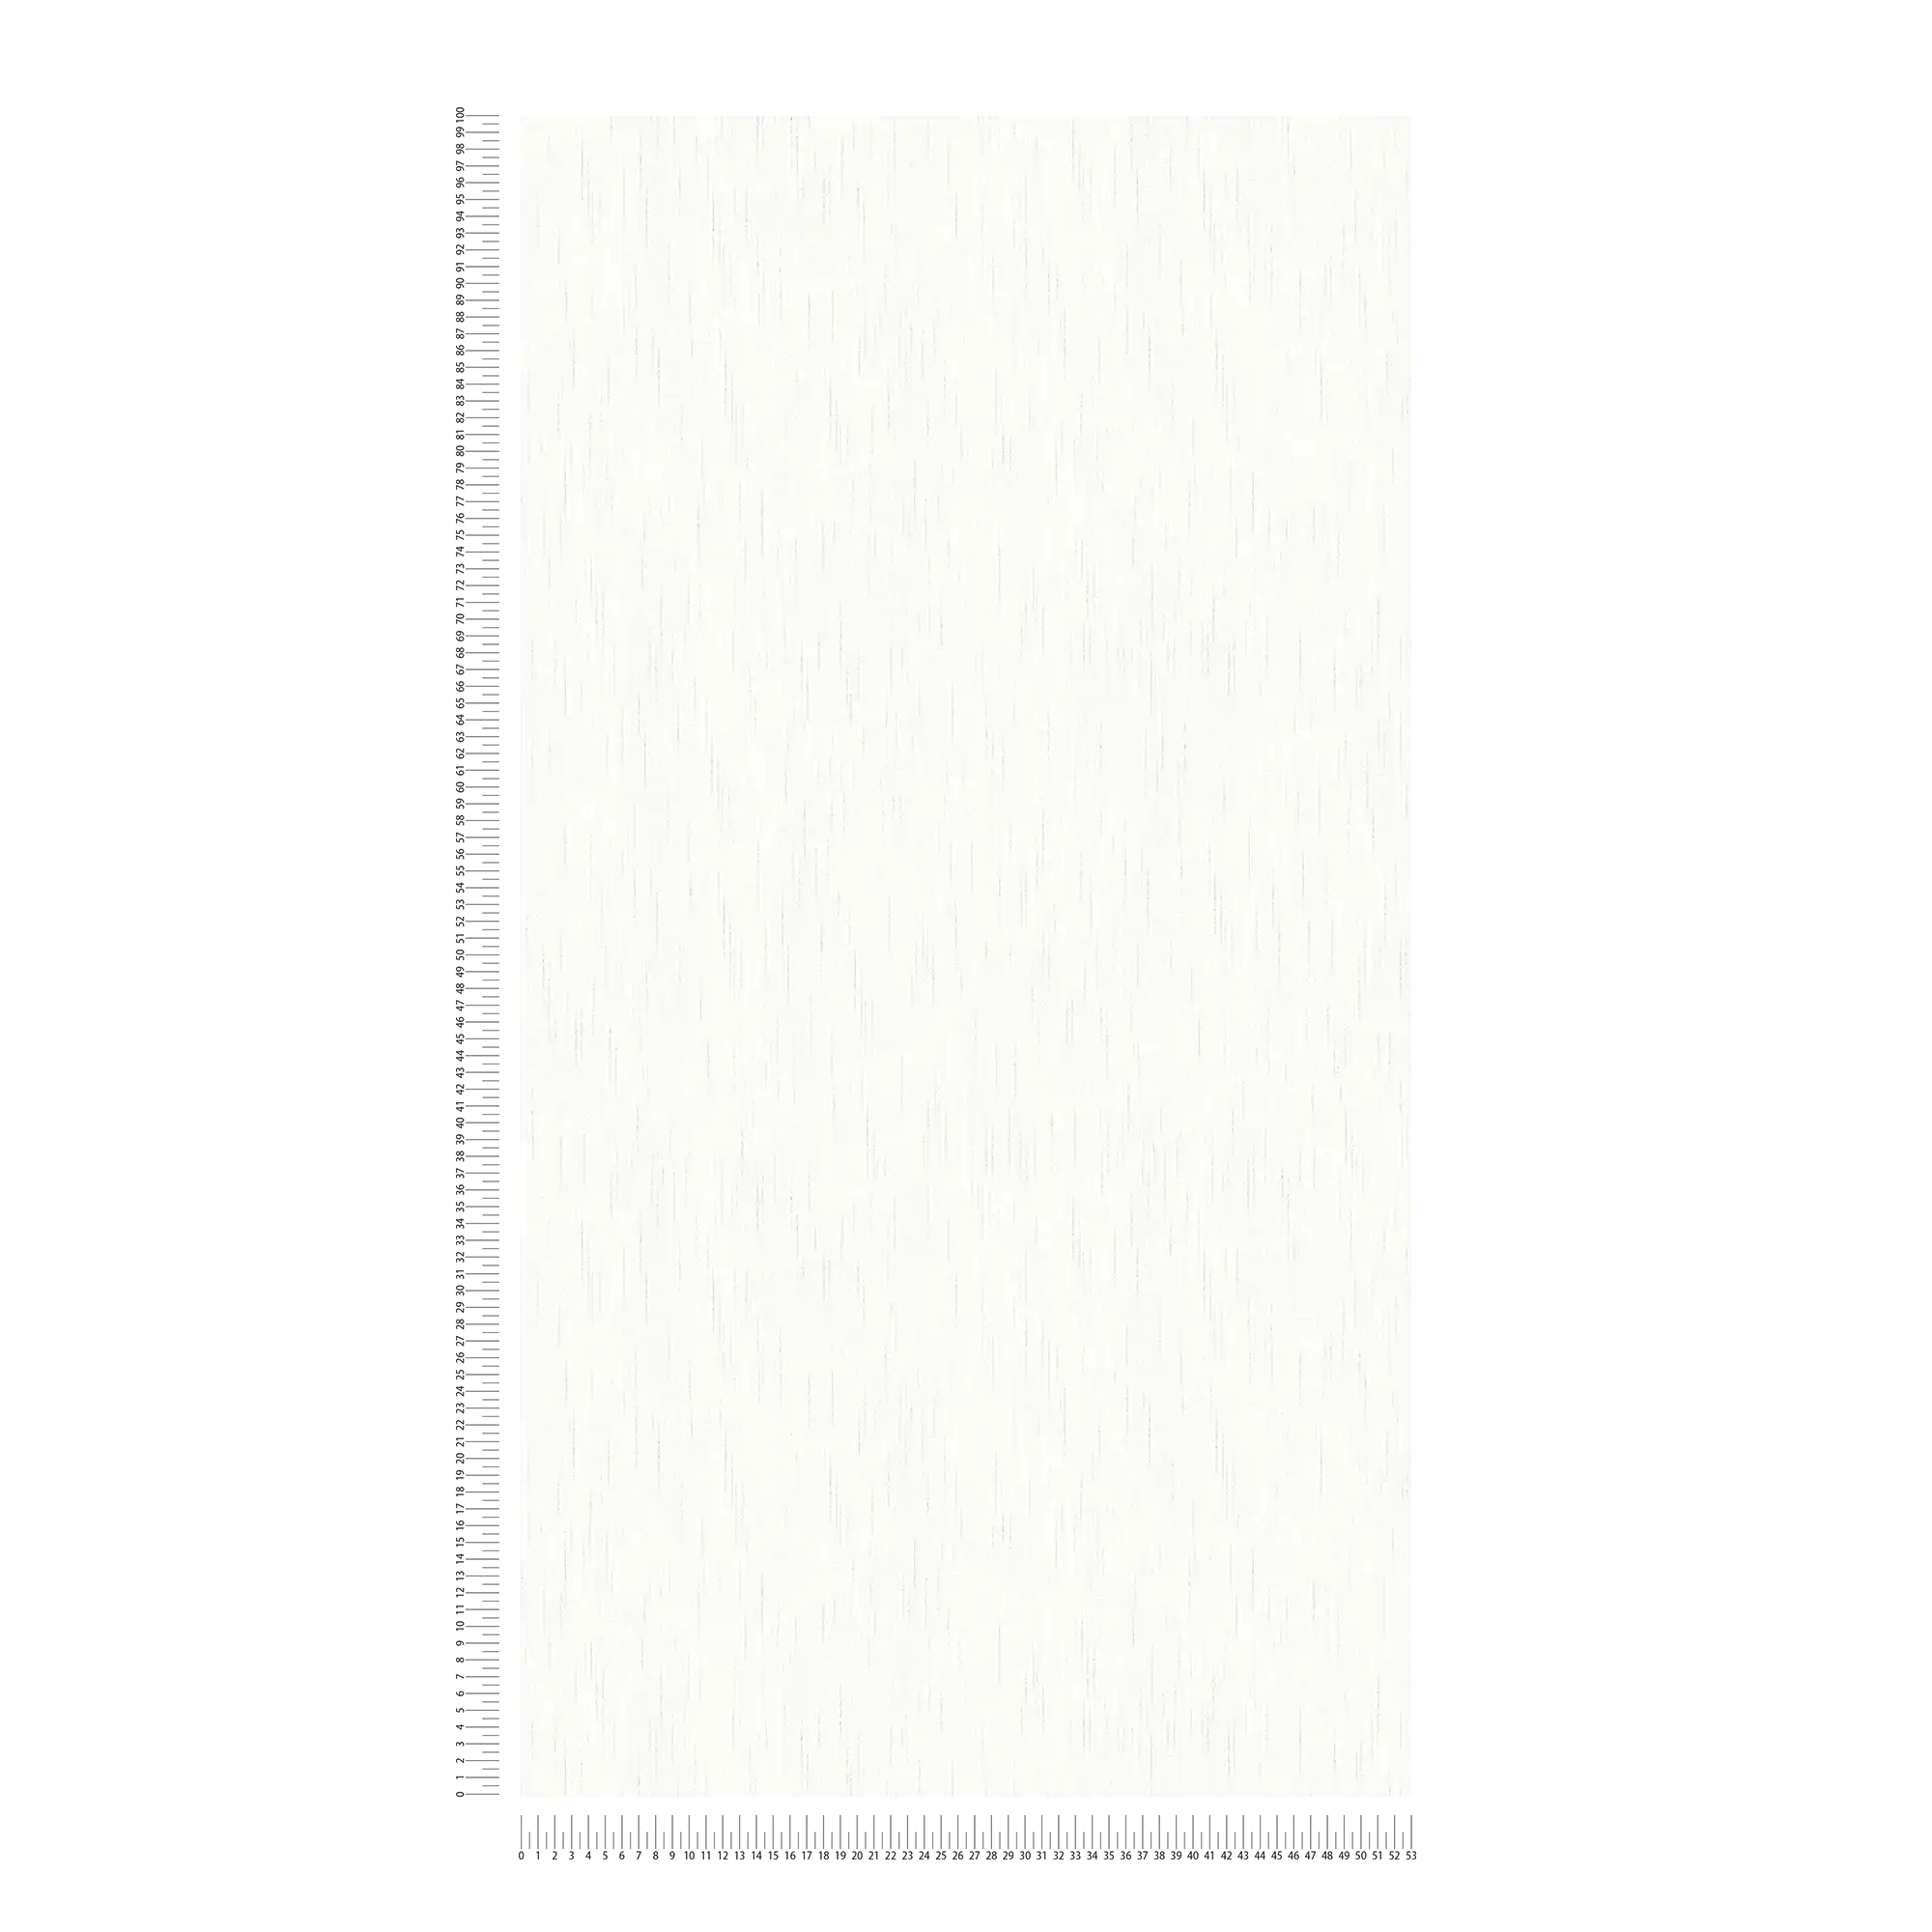             Plain non-woven wallpaper white with metallic threads mottled
        